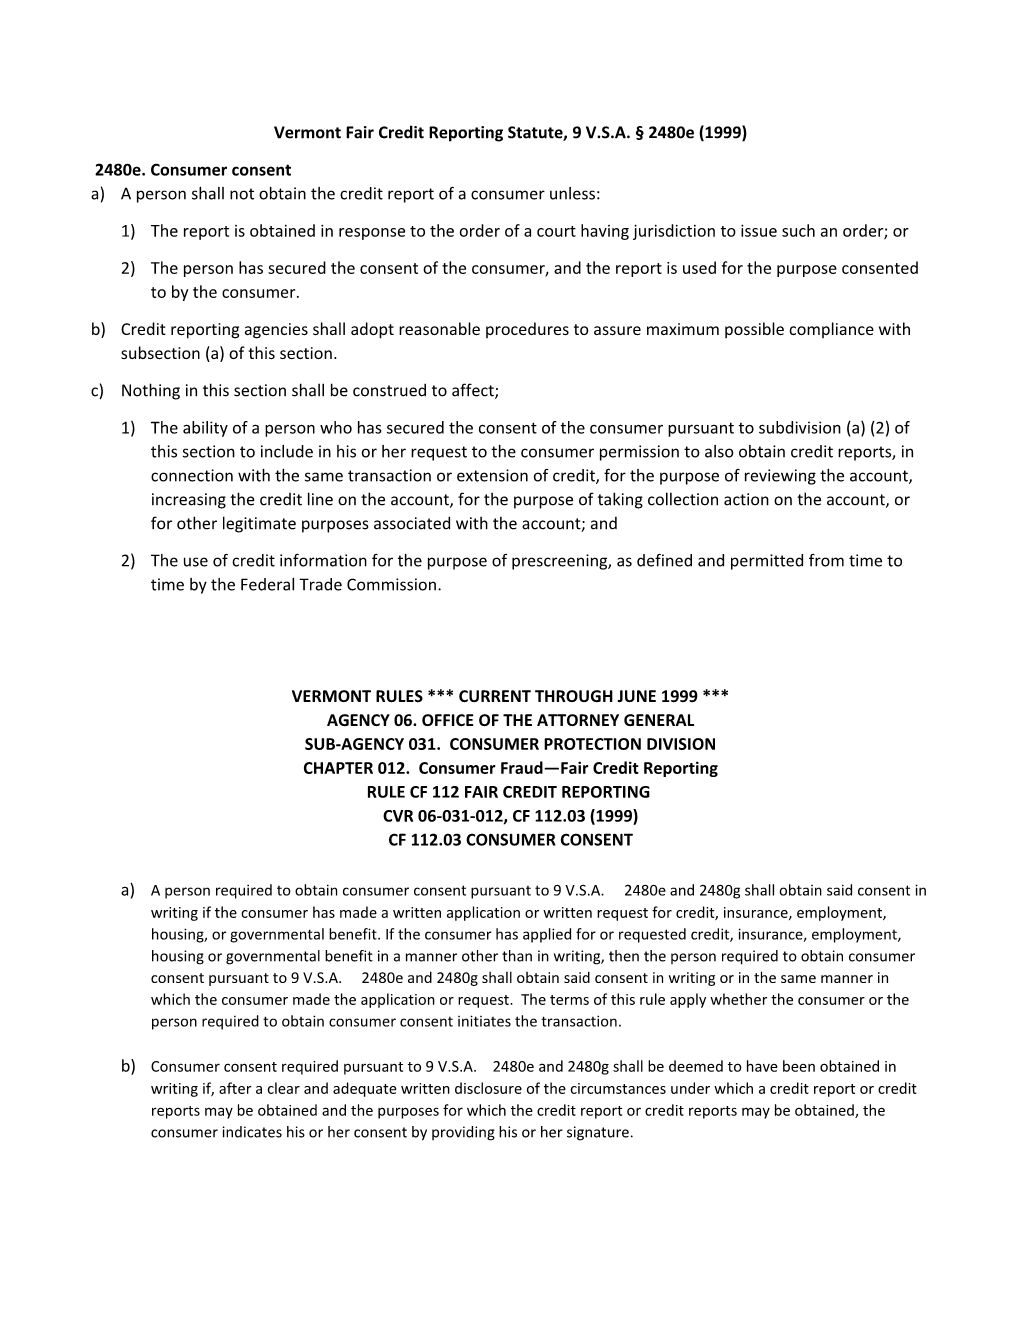 Vermont Fair Credit Reporting Statute, 9 V.S.A. 2480E (1999)